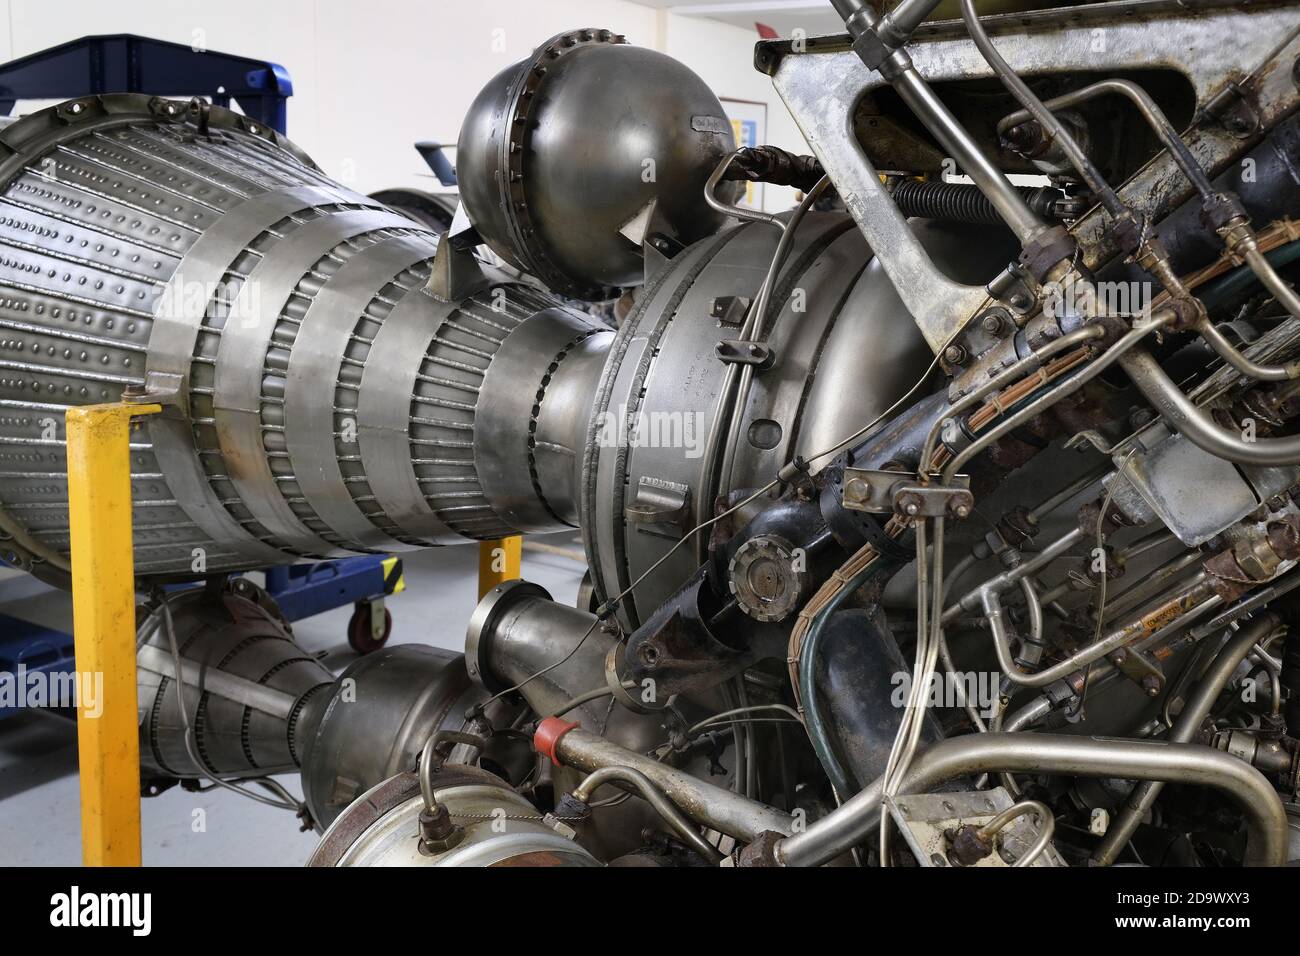 El motor de cohetes instalado en el Britis nuclear de parada bomba de la era de la guerra fría. Foto de stock